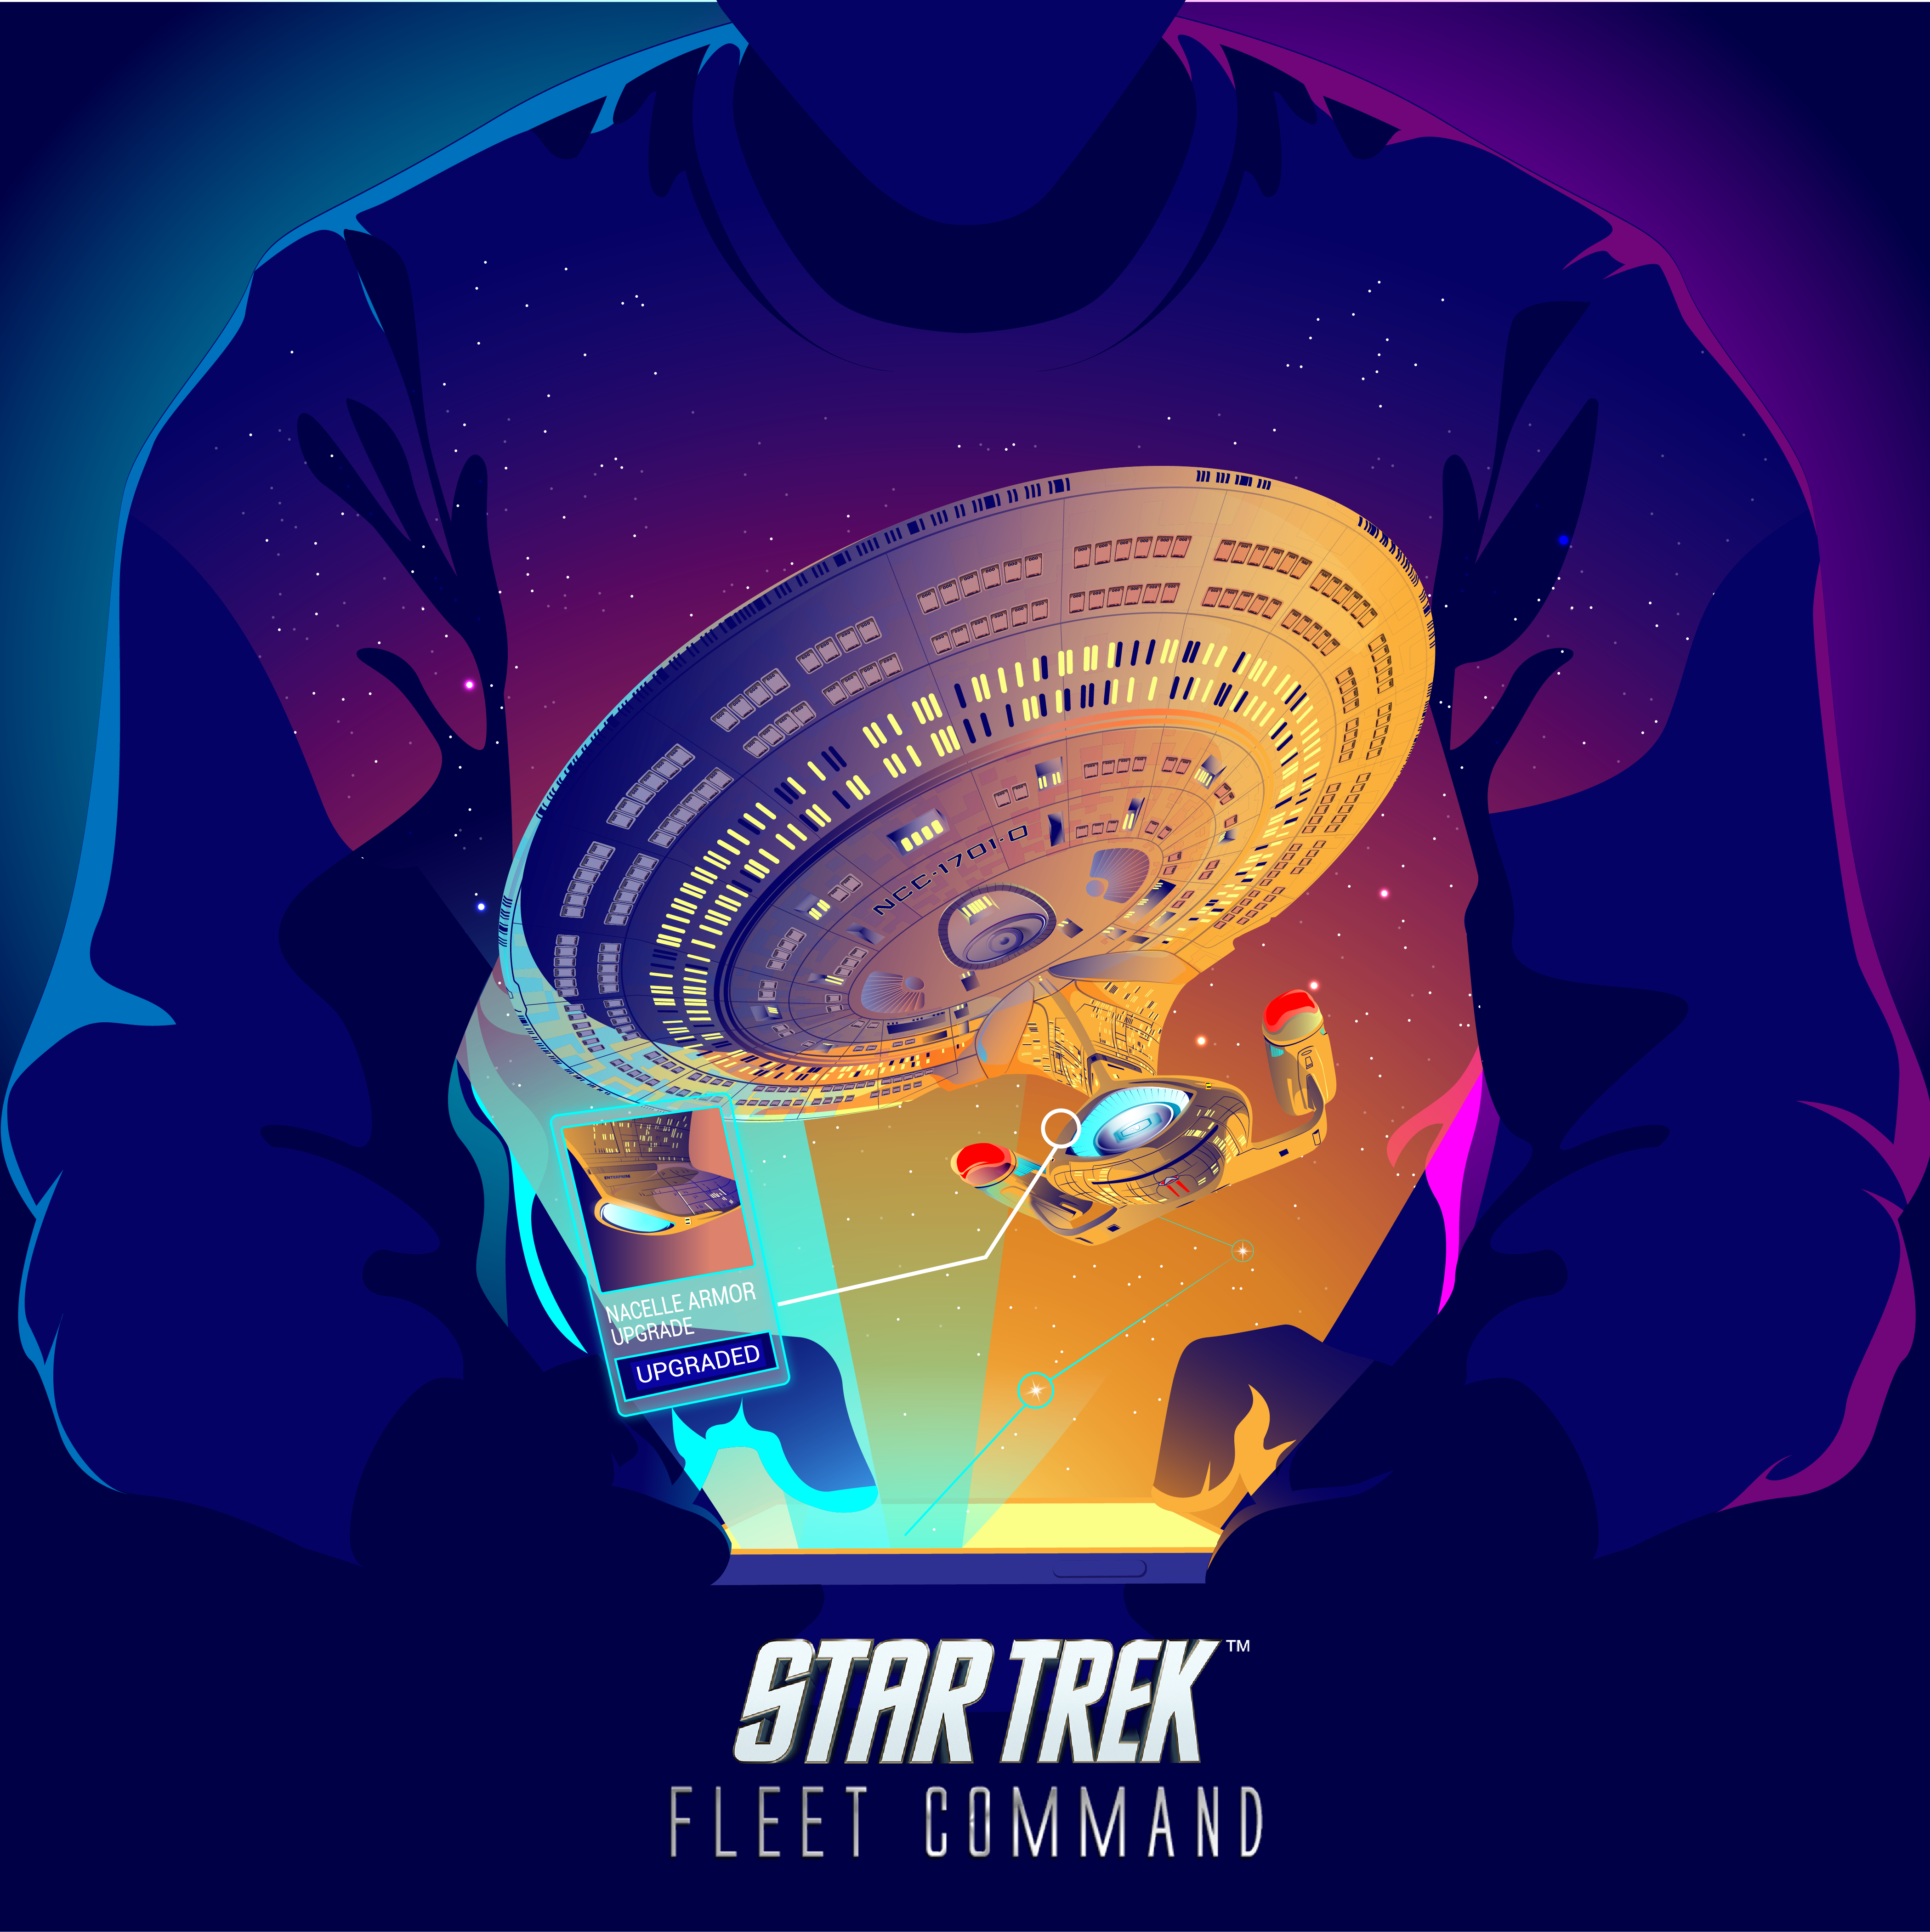 Star Trek Artwork by Richard Villarante